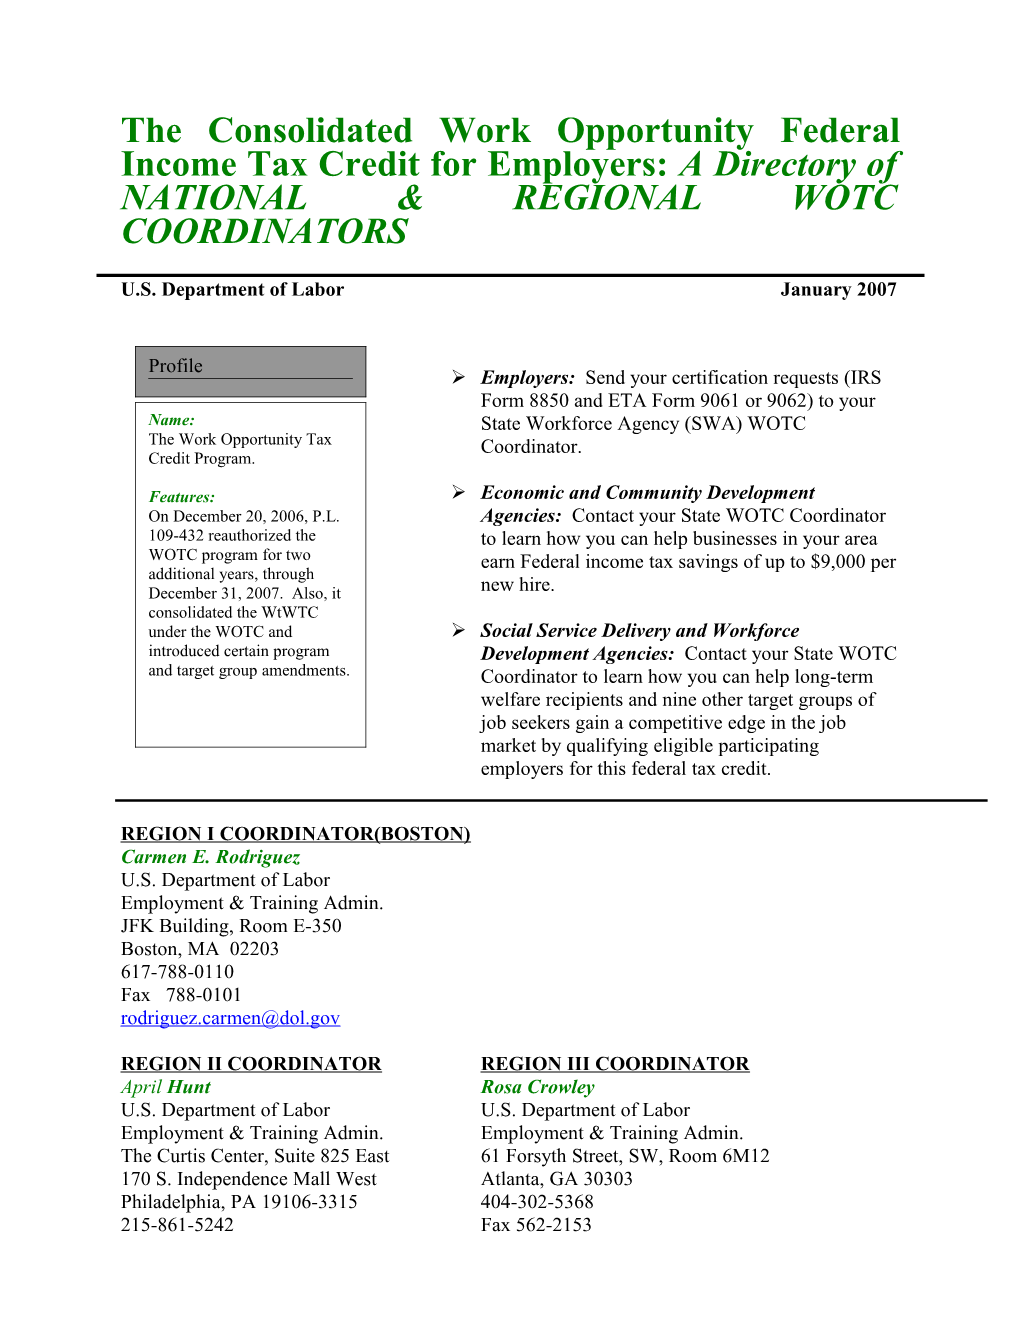 State Wotc/W2w Coordinator Listing